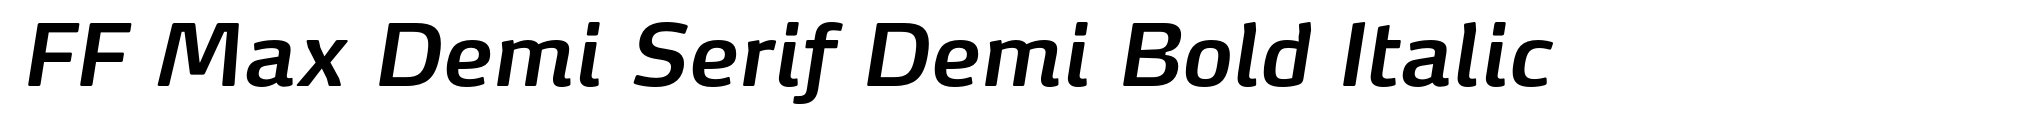 FF Max Demi Serif Demi Bold Italic image